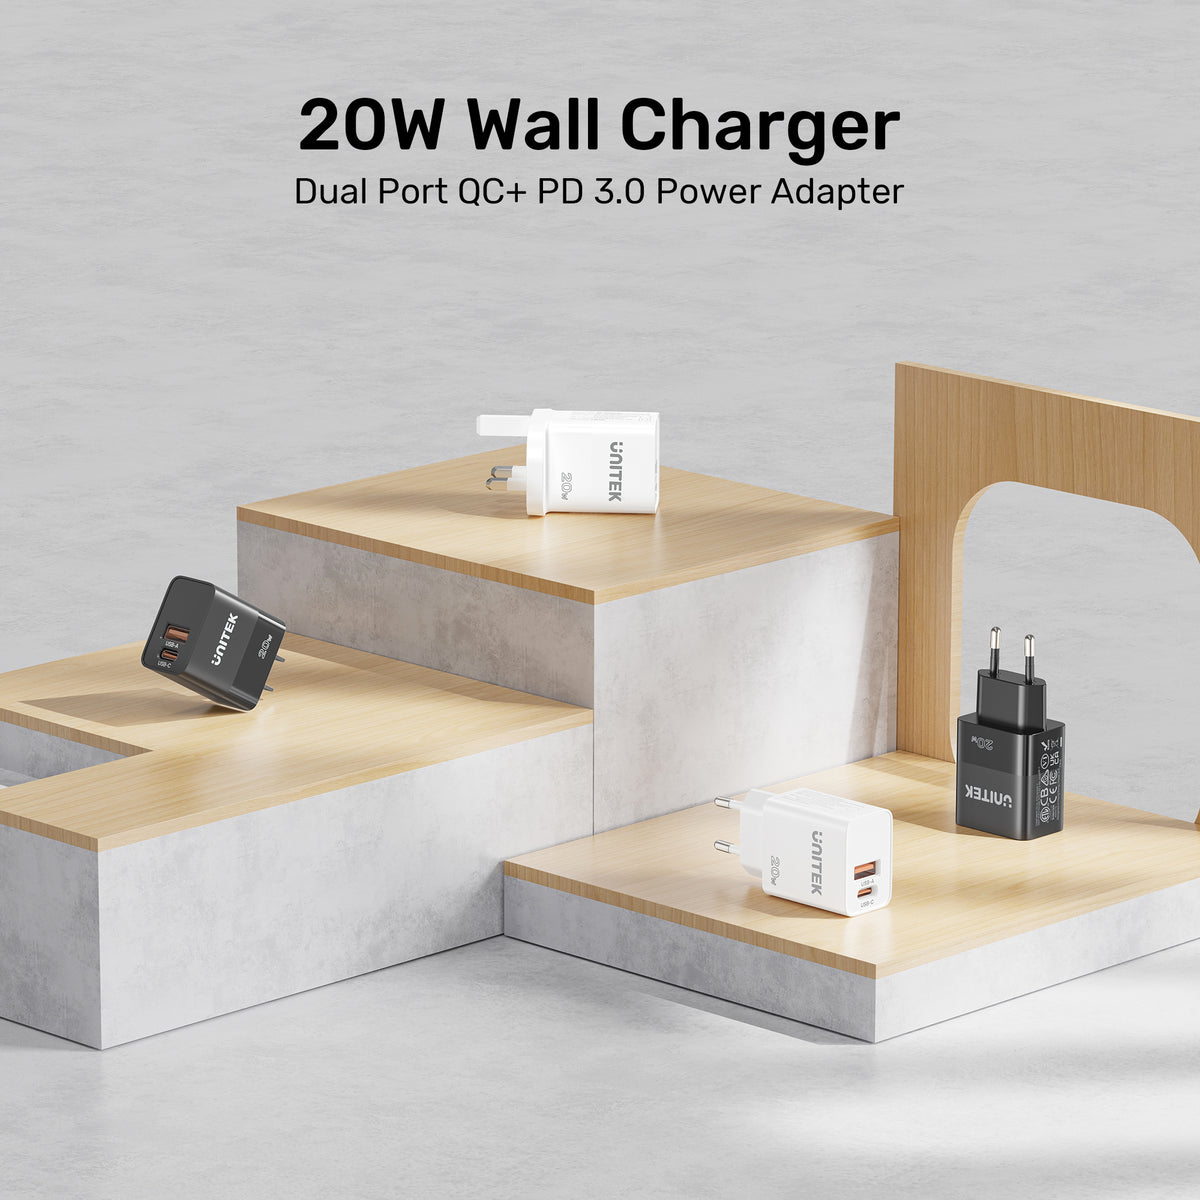 20W牆充器（雙端口QC + PD 3.0 電源適配器）